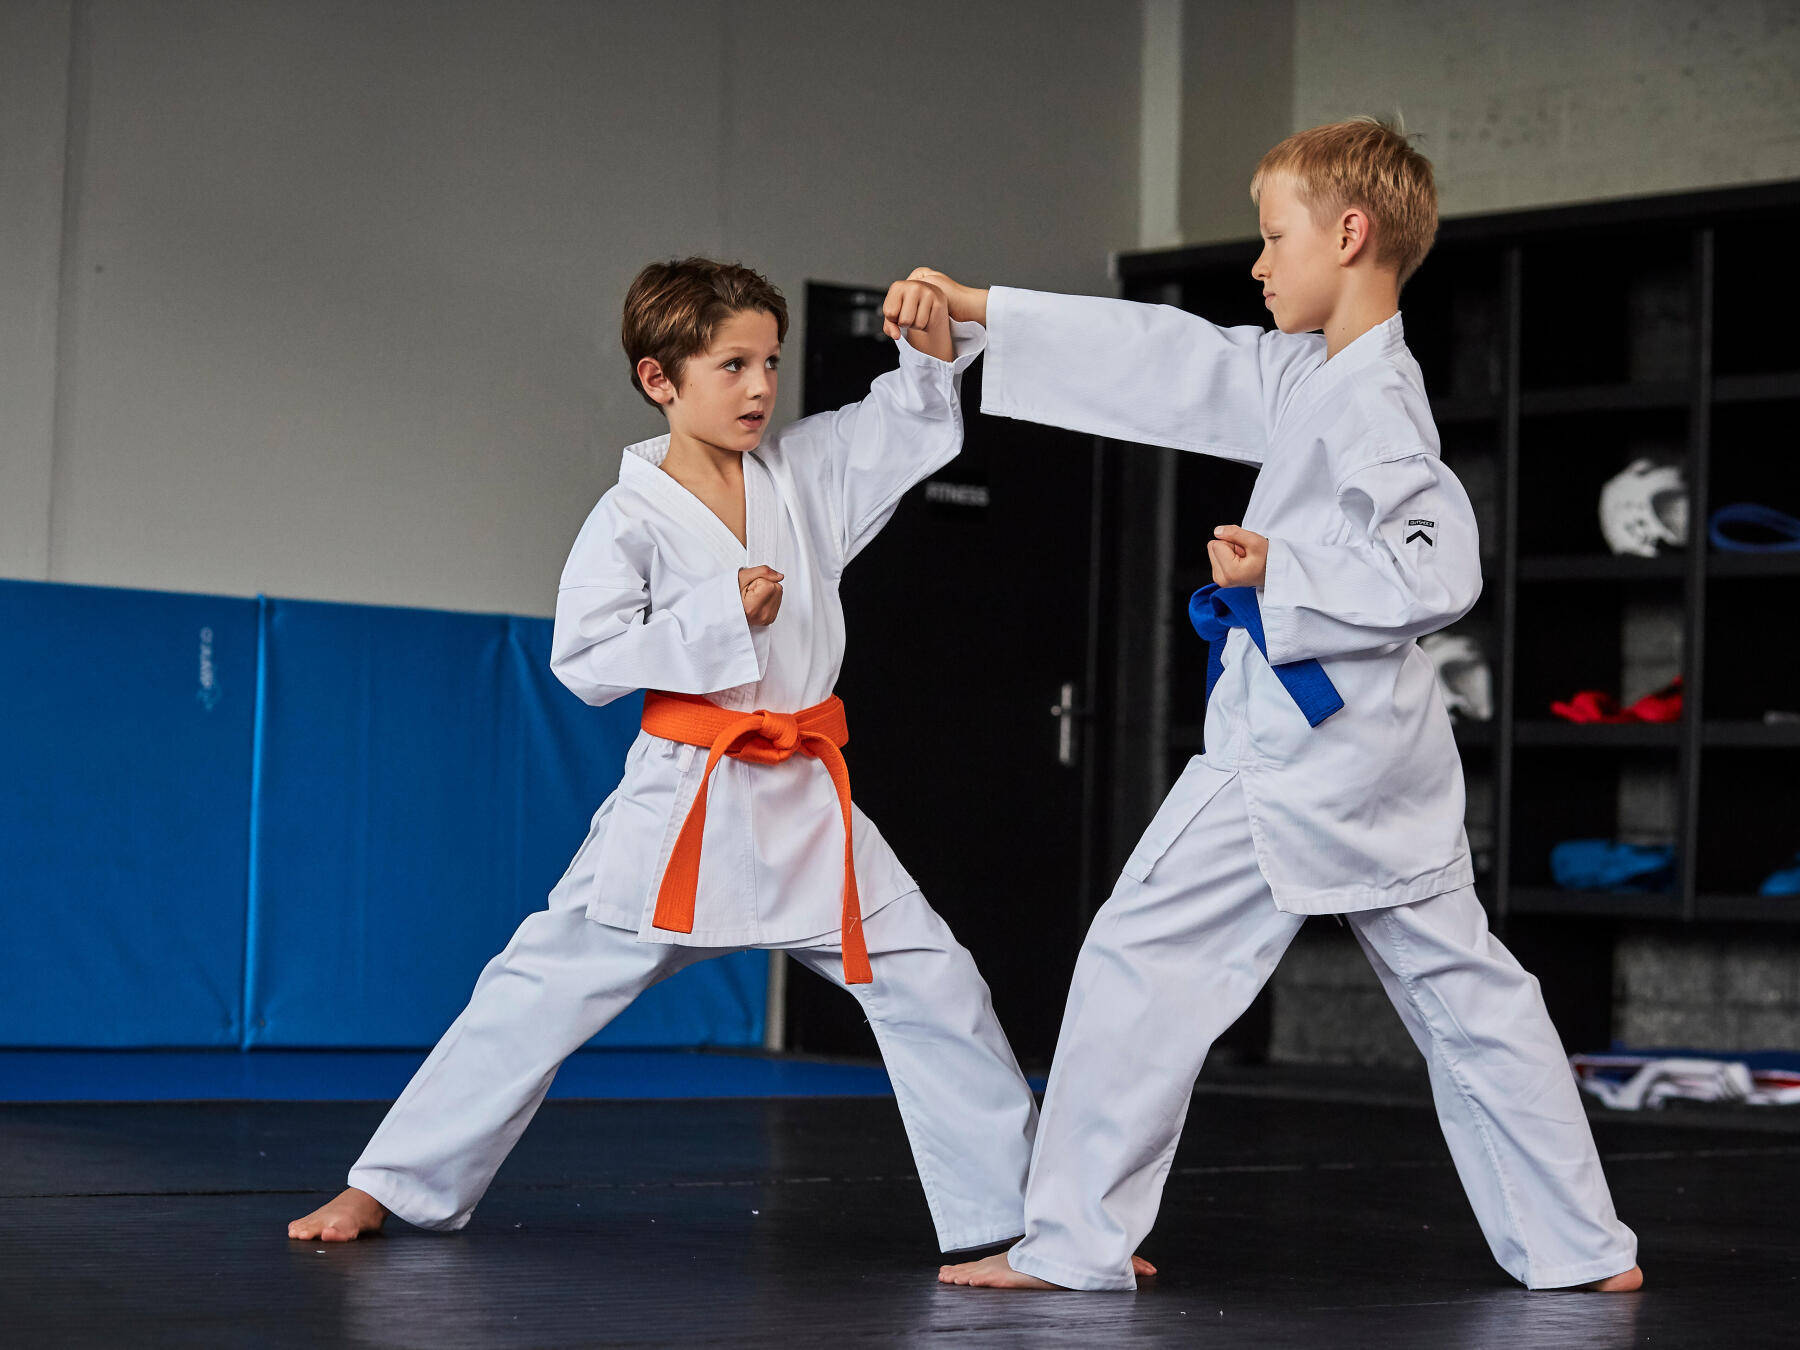 Karatekinder, Die Kämpfen. Wallpaper